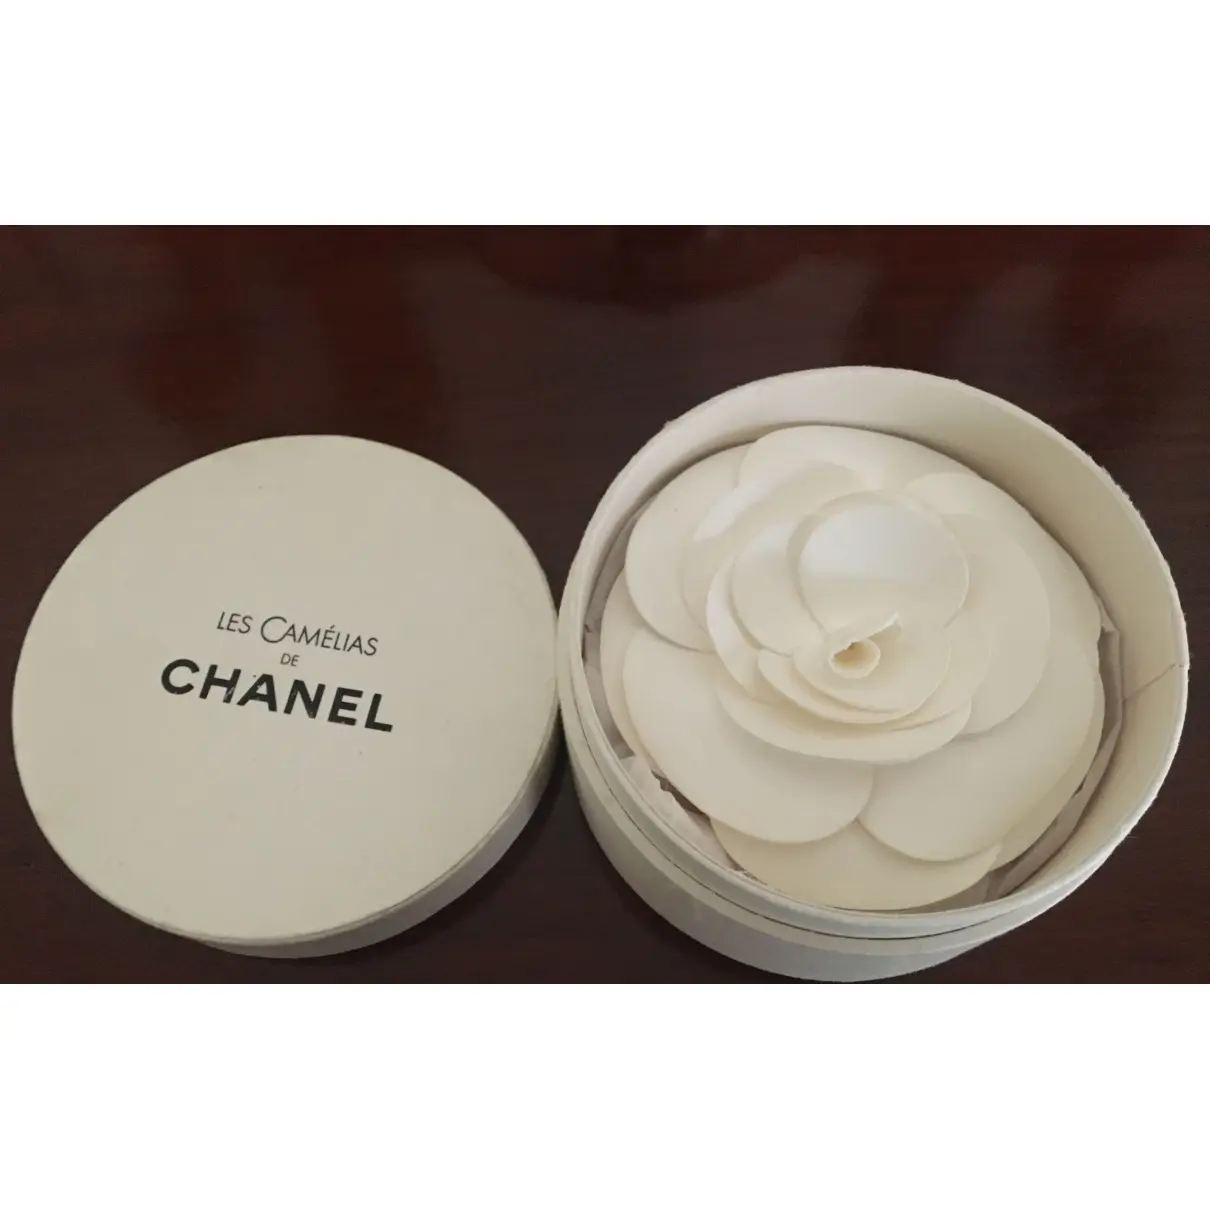 Camélia hair accessory Chanel